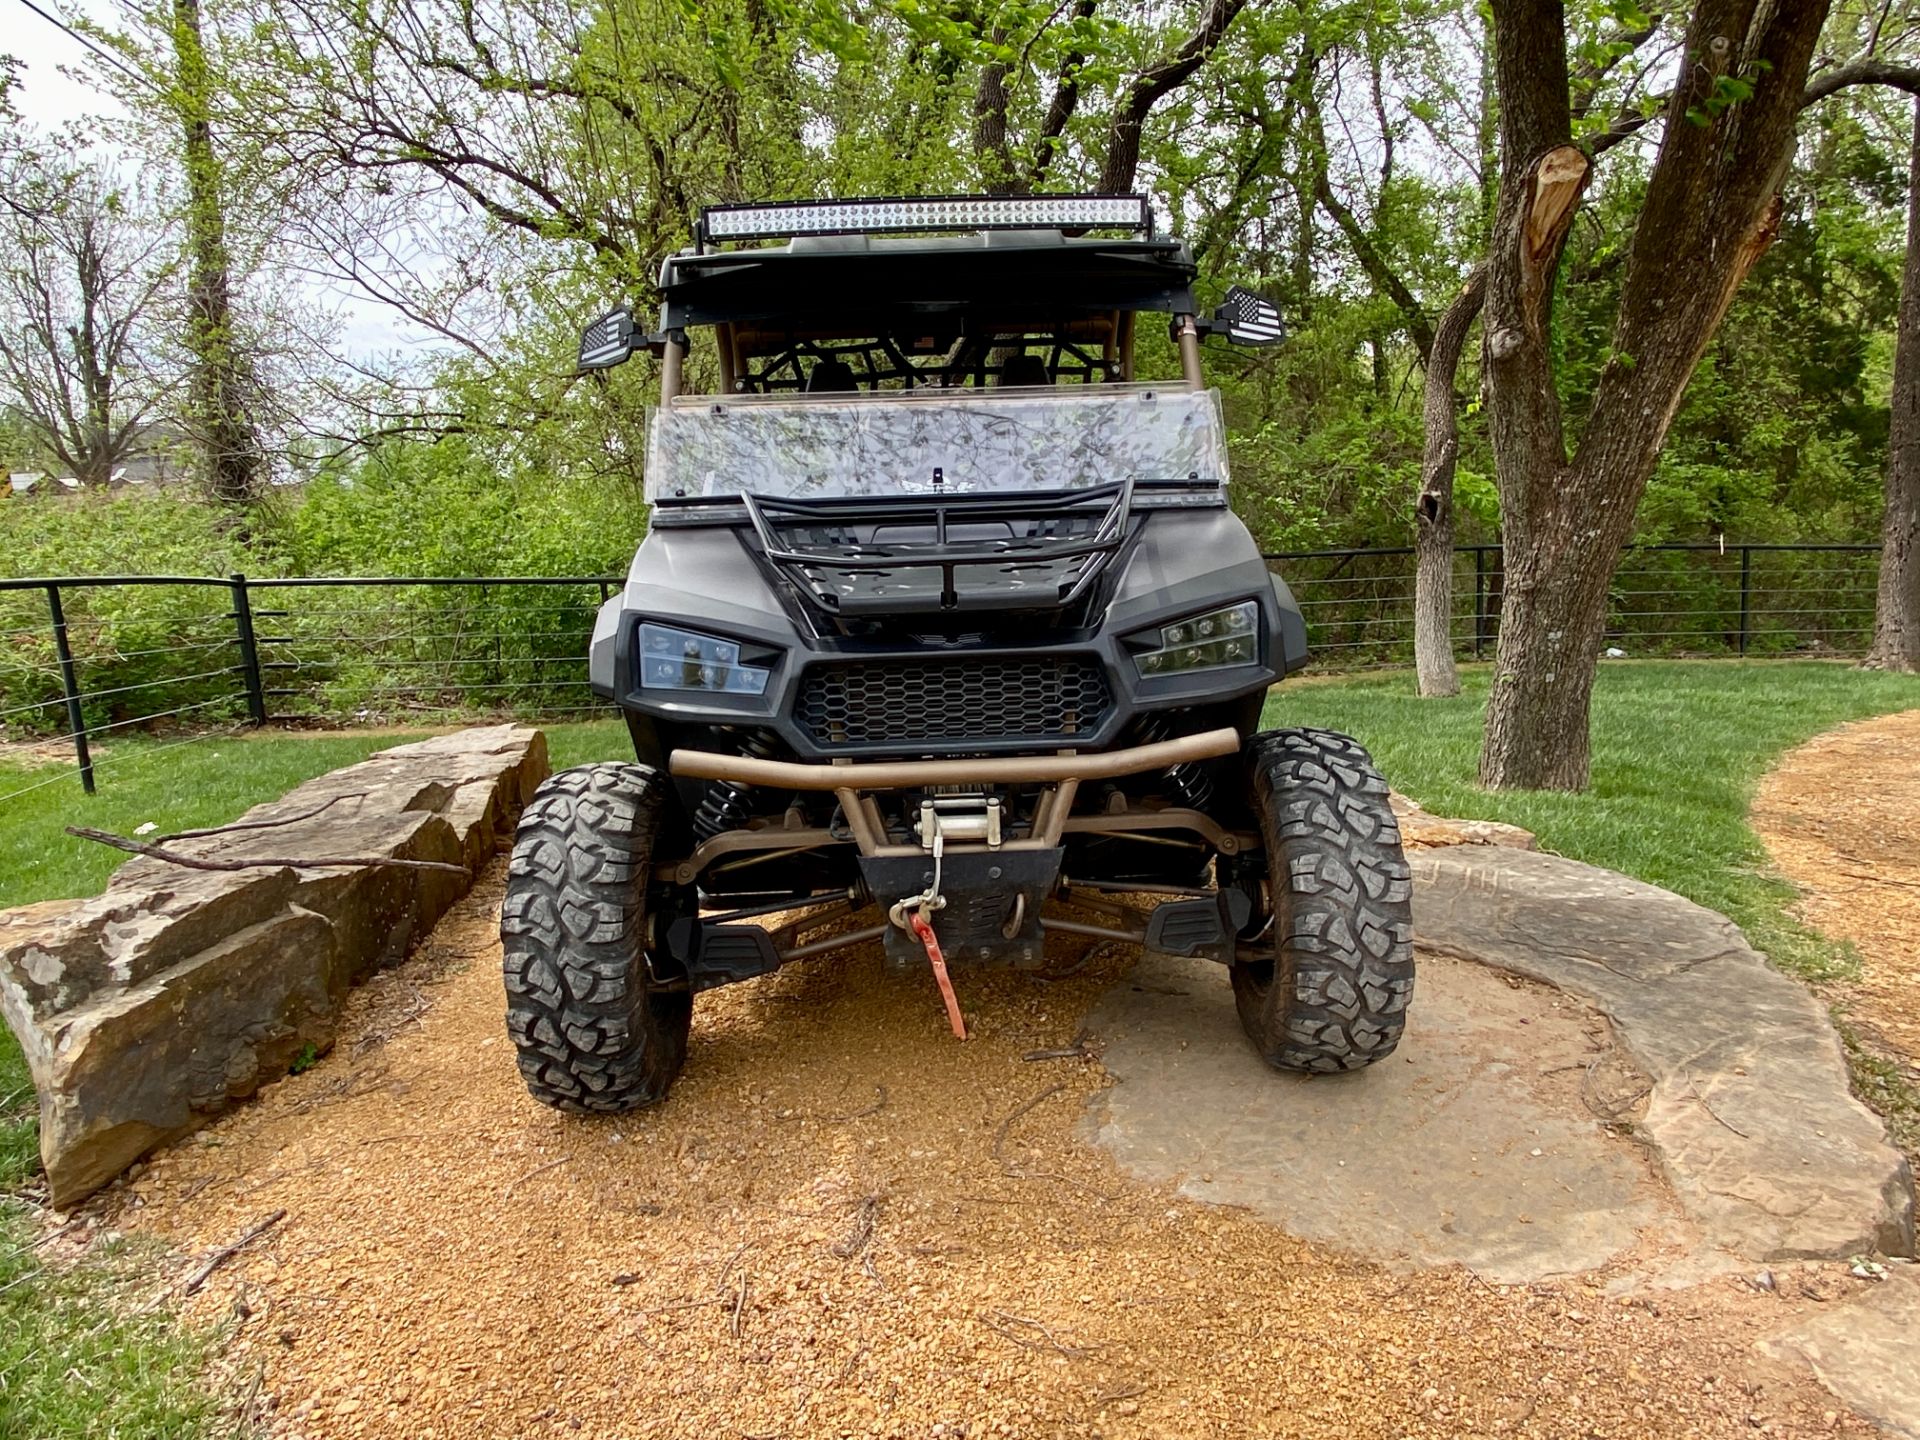 2019 Textron Off Road Havoc X in Jones, Oklahoma - Photo 3